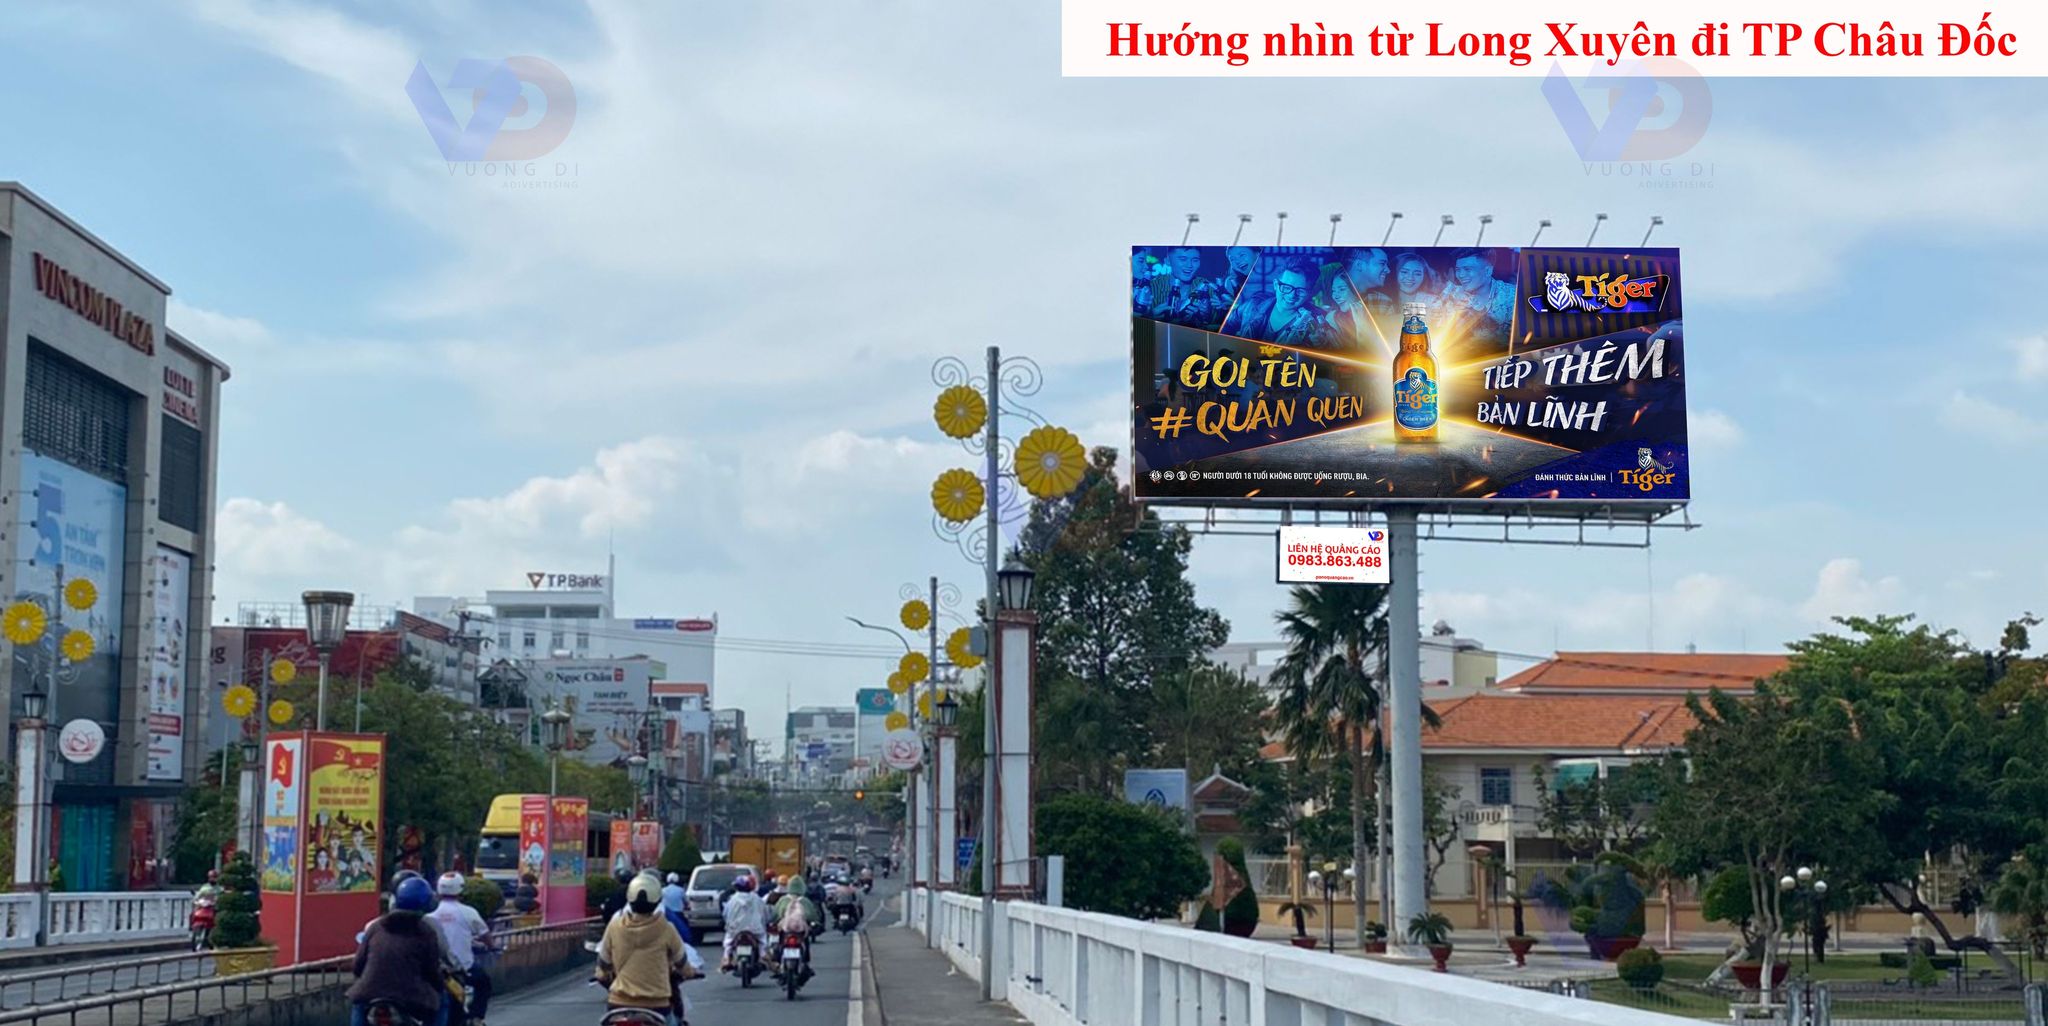 Bảng quảng cáo tại Cầu Hoàng Diệu, đối diện Vincom Plaza Long Xuyên, TP. Long Xuyên, An Giang